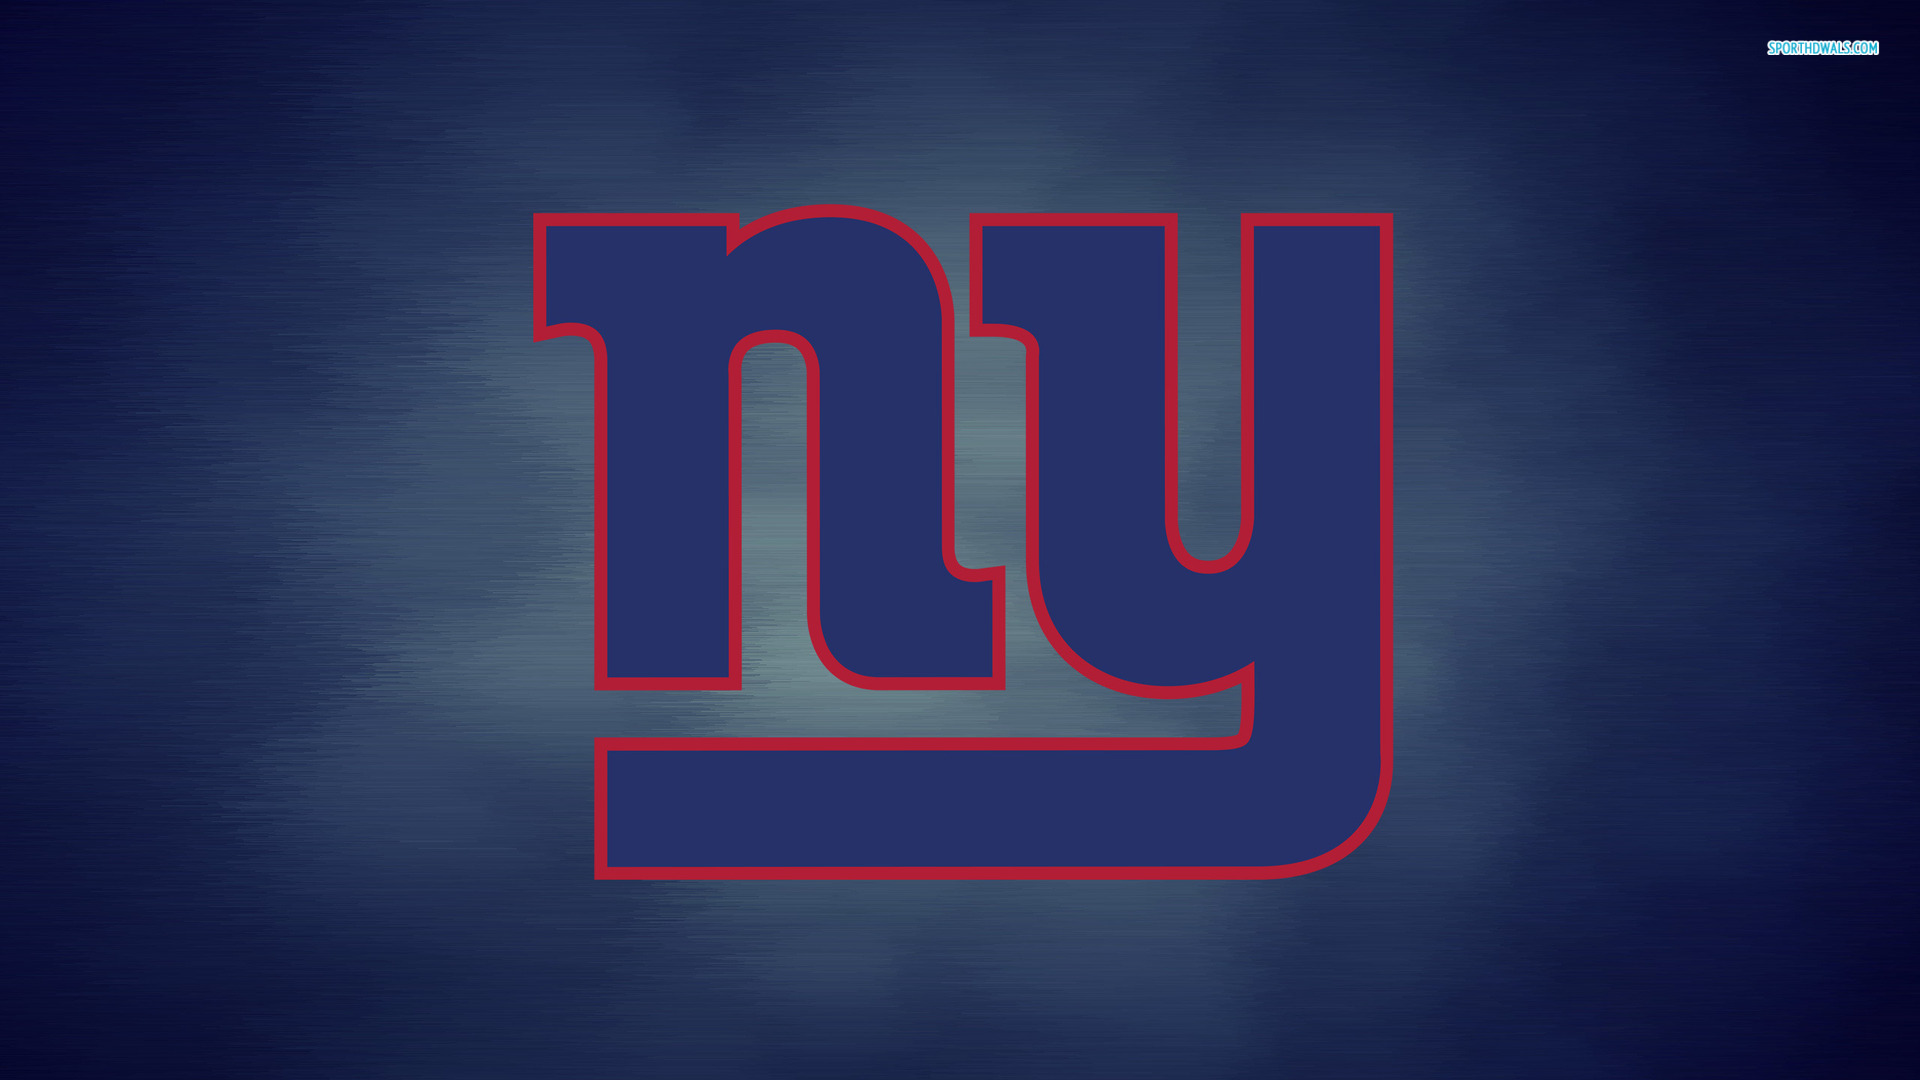 New York Giants Football Team Logo Wallpaper